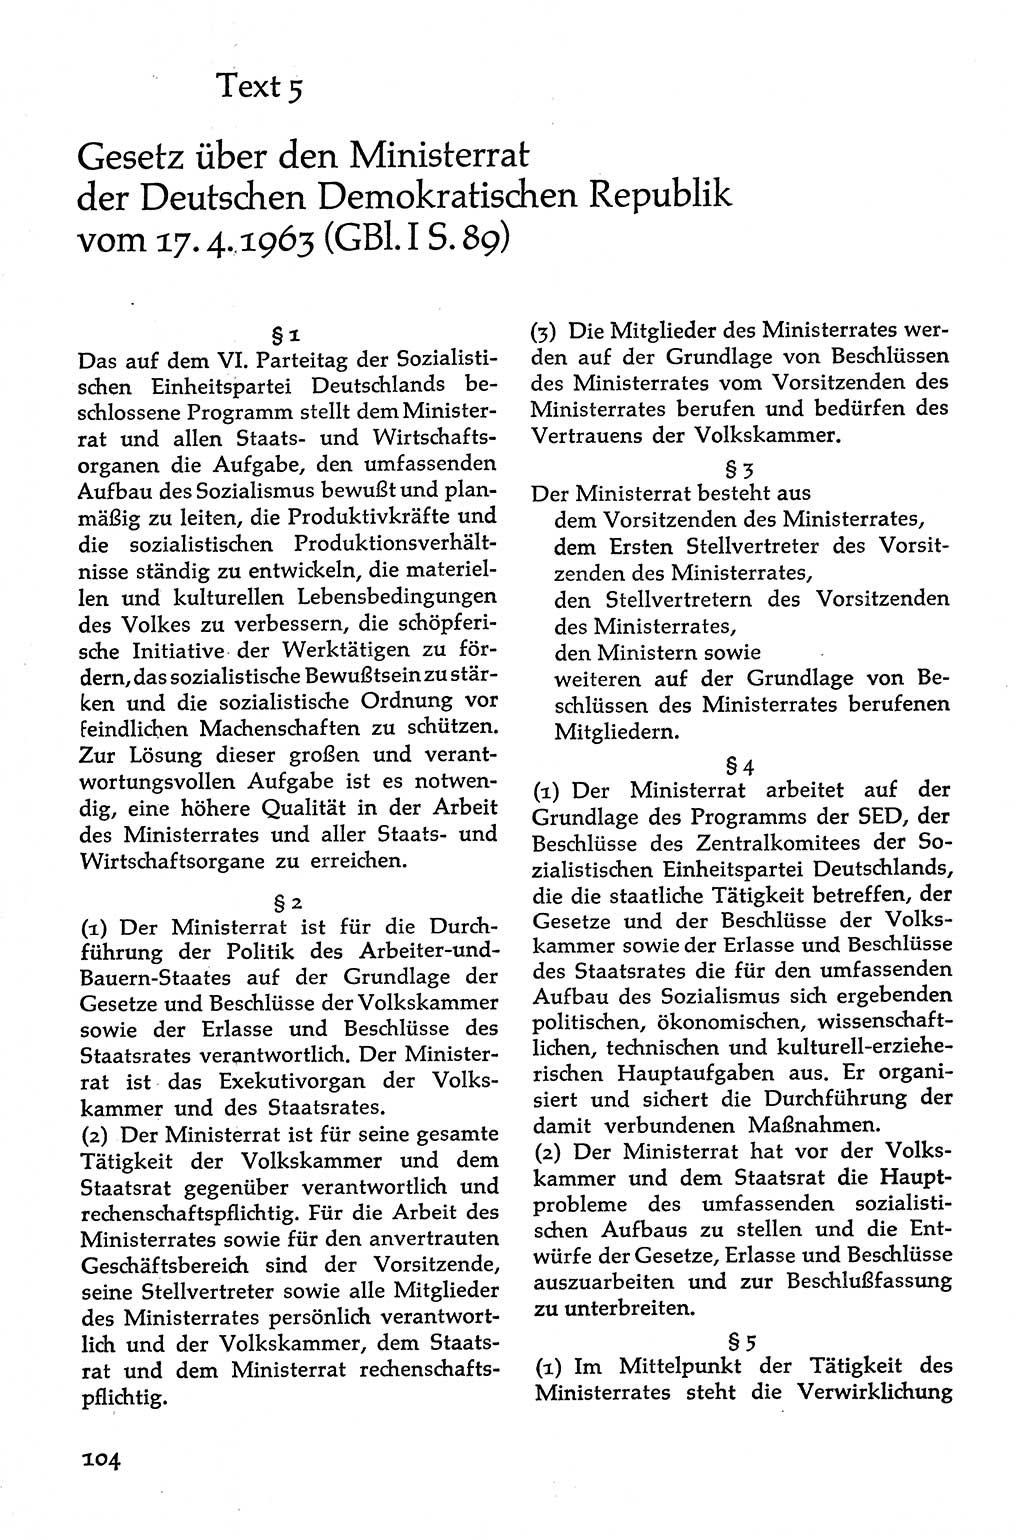 Volksdemokratische Ordnung in Mitteldeutschland [Deutsche Demokratische Republik (DDR)], Texte zur verfassungsrechtlichen Situation 1963, Seite 104 (Volksdem. Ordn. Md. DDR 1963, S. 104)